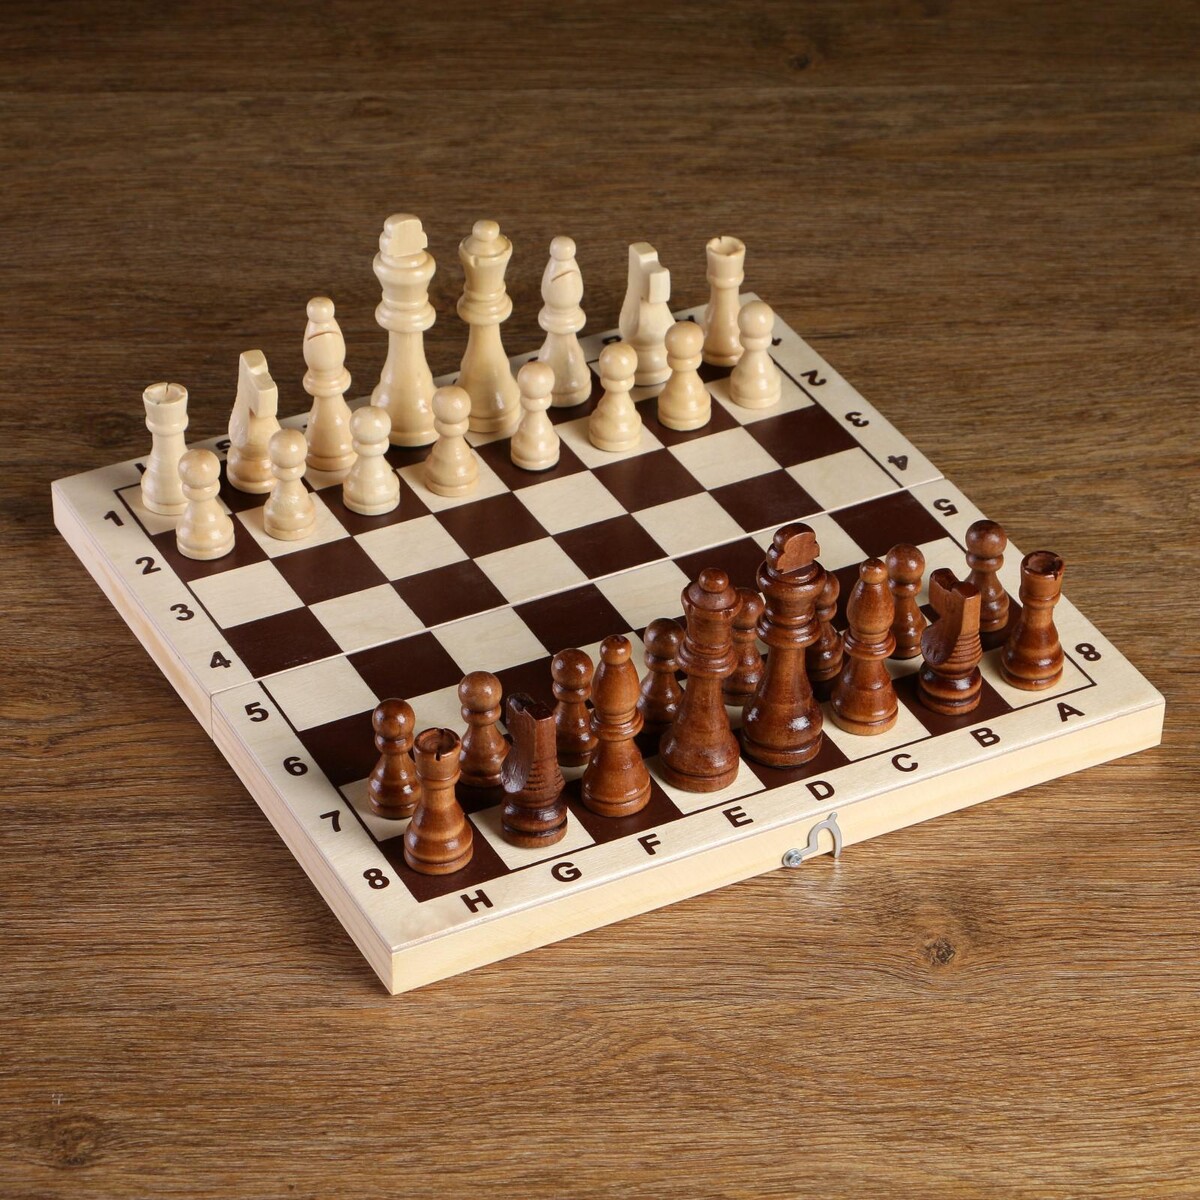 Шахматные фигуры, король h-8 см, пешка h-4 см зигфрид – король чемпионов том 1